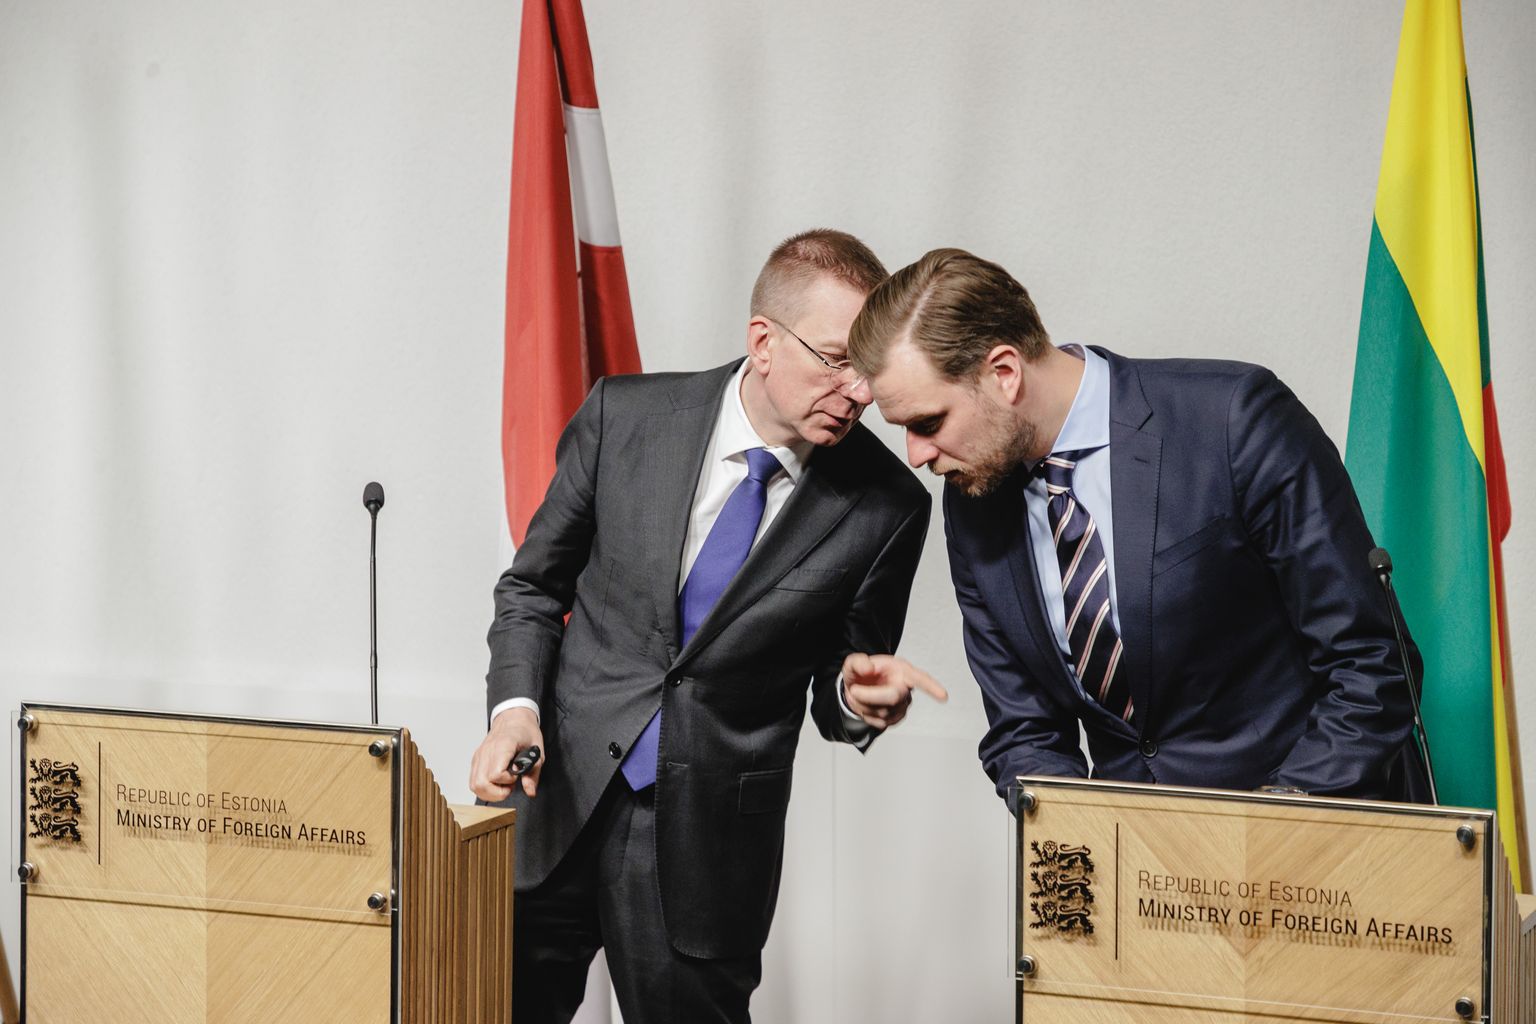 Министр иностранных дел Латвии Эдгар Ринкевич и глава МИД Литвы Габриелюс Ландсбергис в Таллинне. Апрель 2022 года.